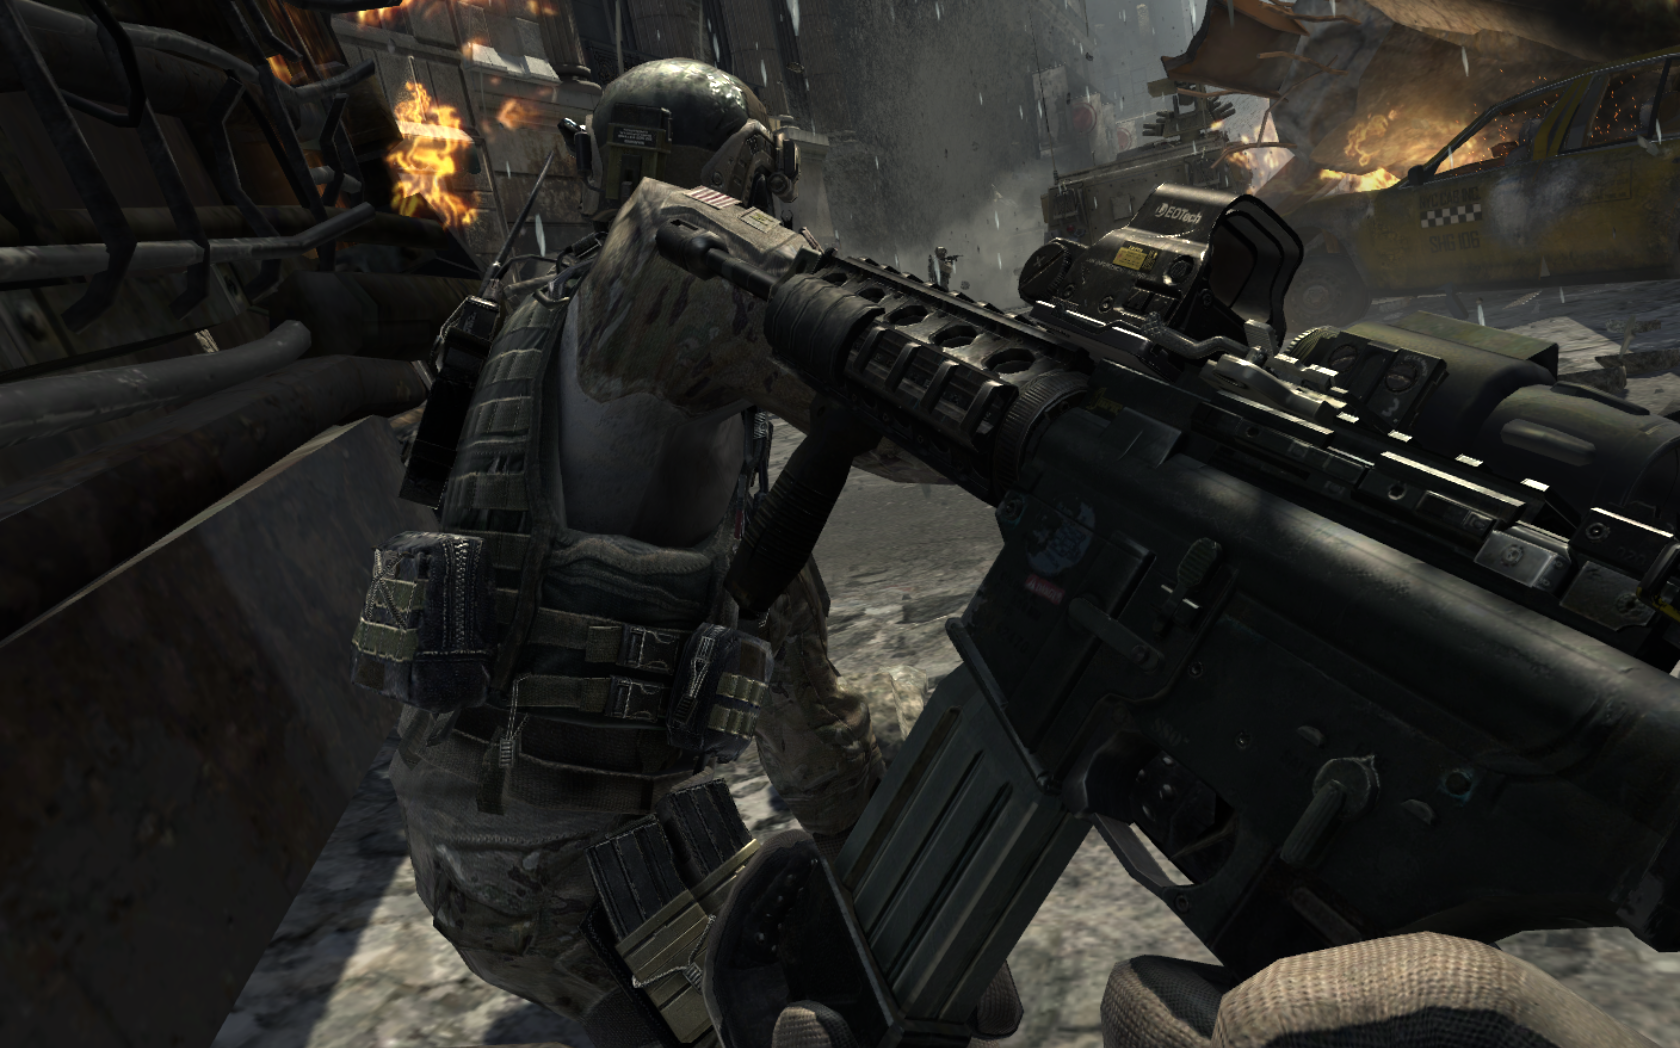 Call of duty mw 3. Call of Duty: Modern Warfare 3. Cod 4 MW 3. Call of Duty Modern Warfare mw3. Call of Duty Modern варфаер 3.